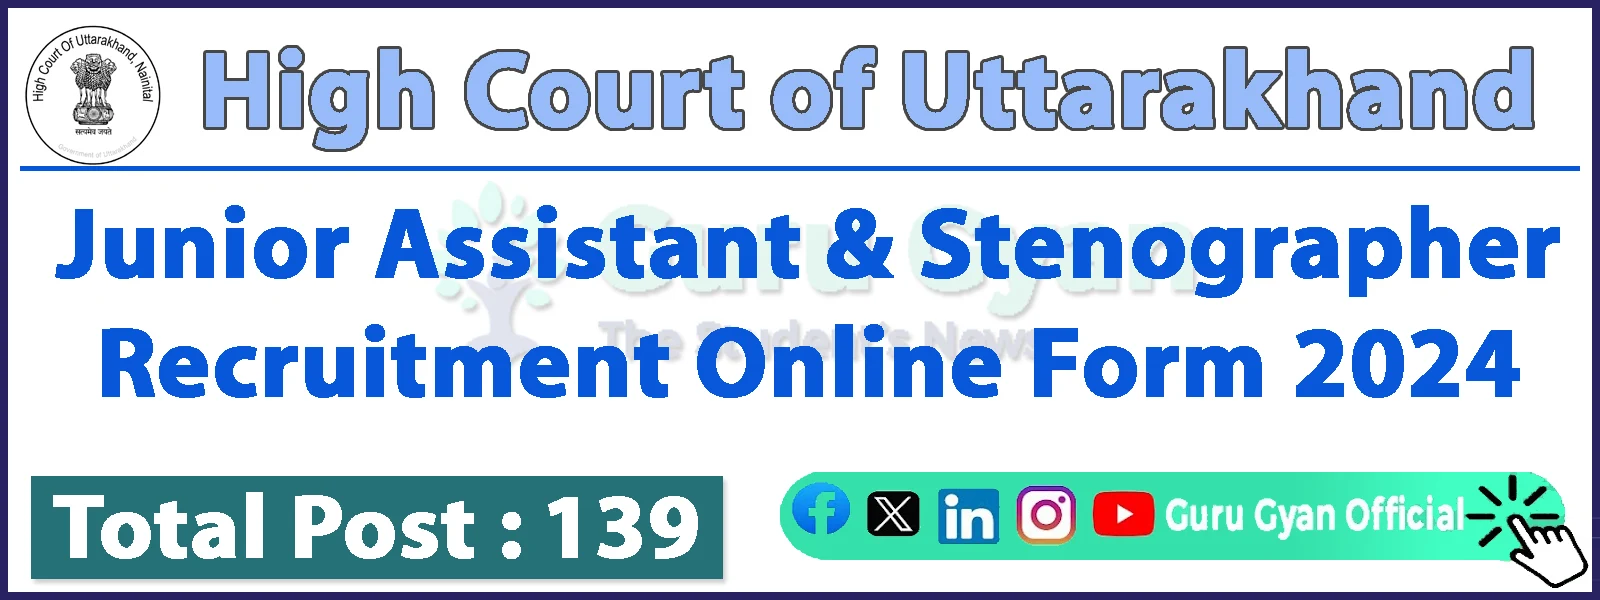 NTA Uttarakhand High Court Junior Assistant / Stenographer Online Form 2024NTA Uttarakhand High Court Junior Assistant / Stenographer Online Form 2024